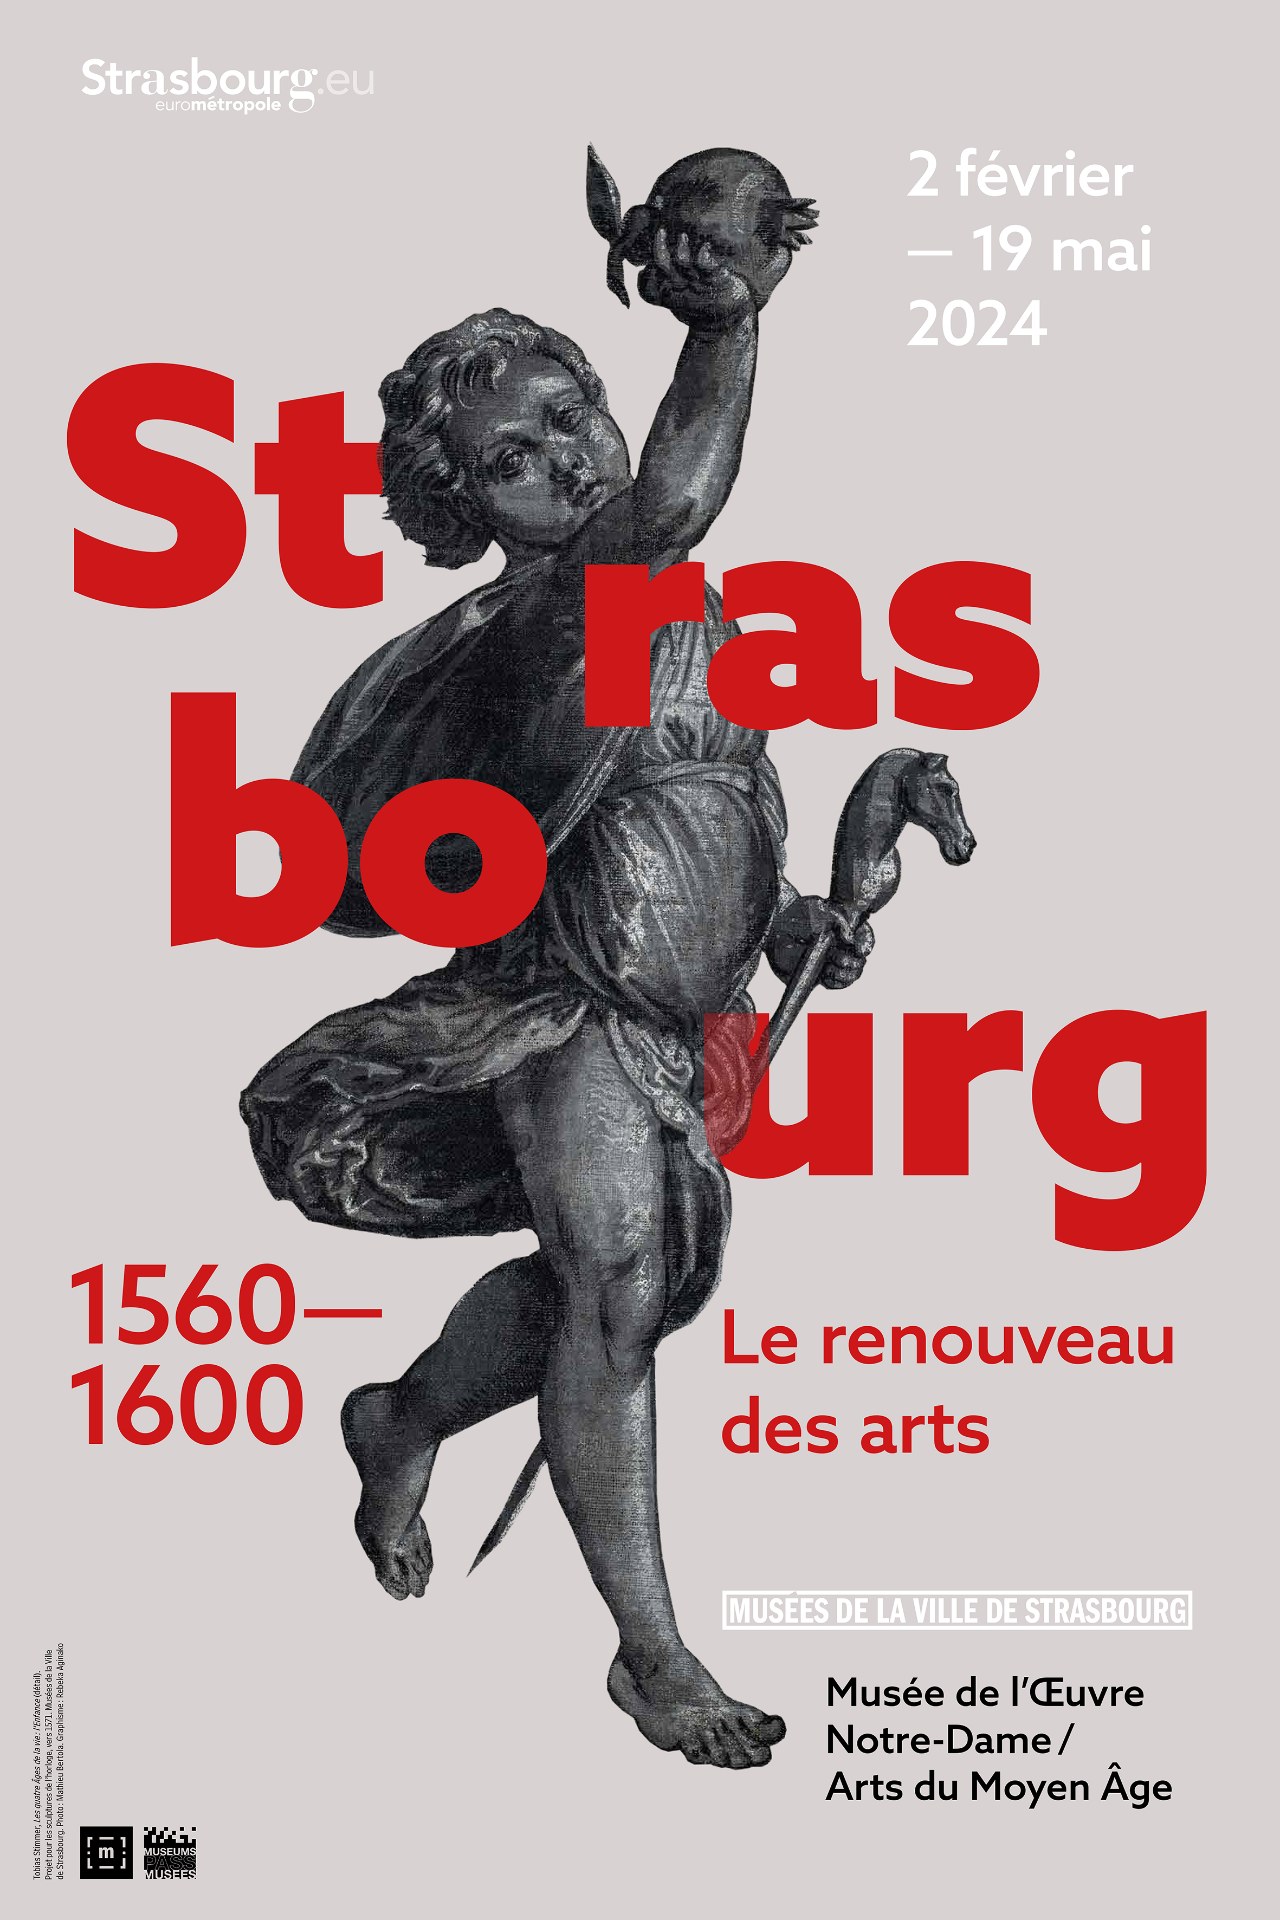 Strasbourg 1560-1600. Die Erneuerung der Künste